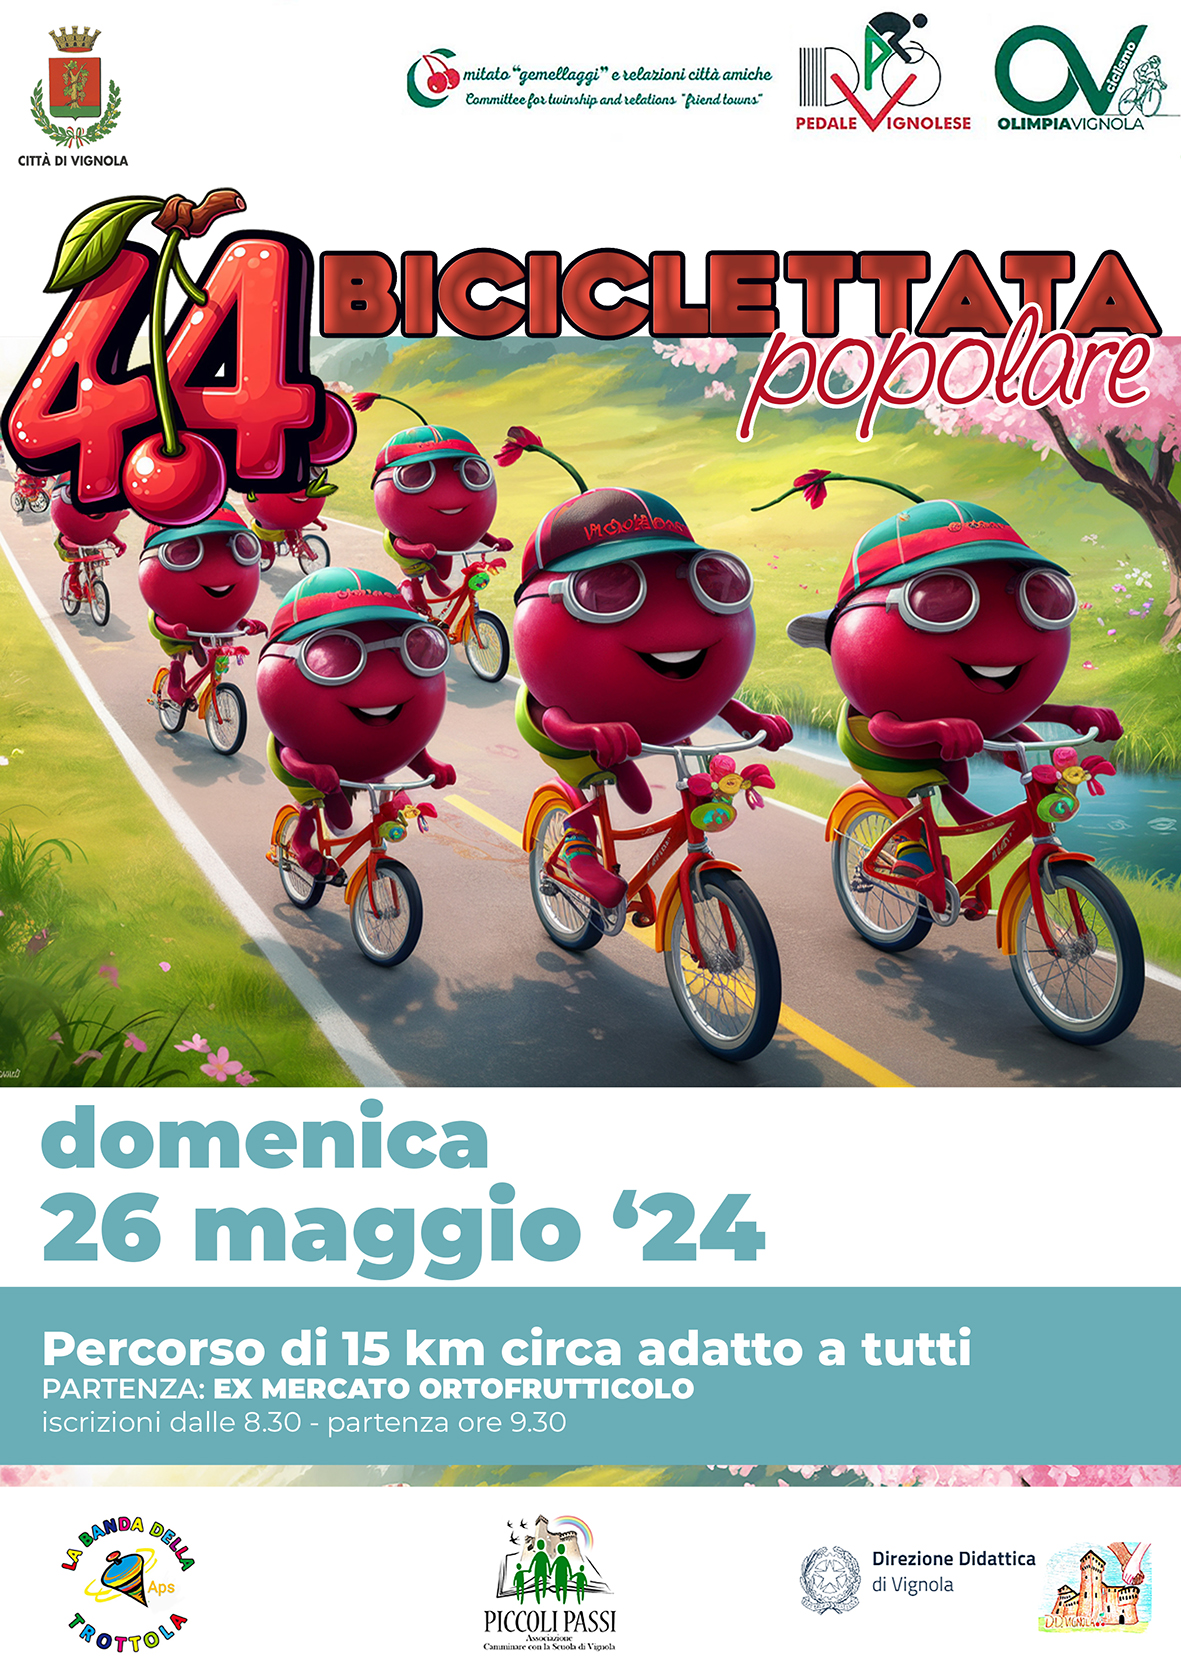 44 Biciclettata Popolare